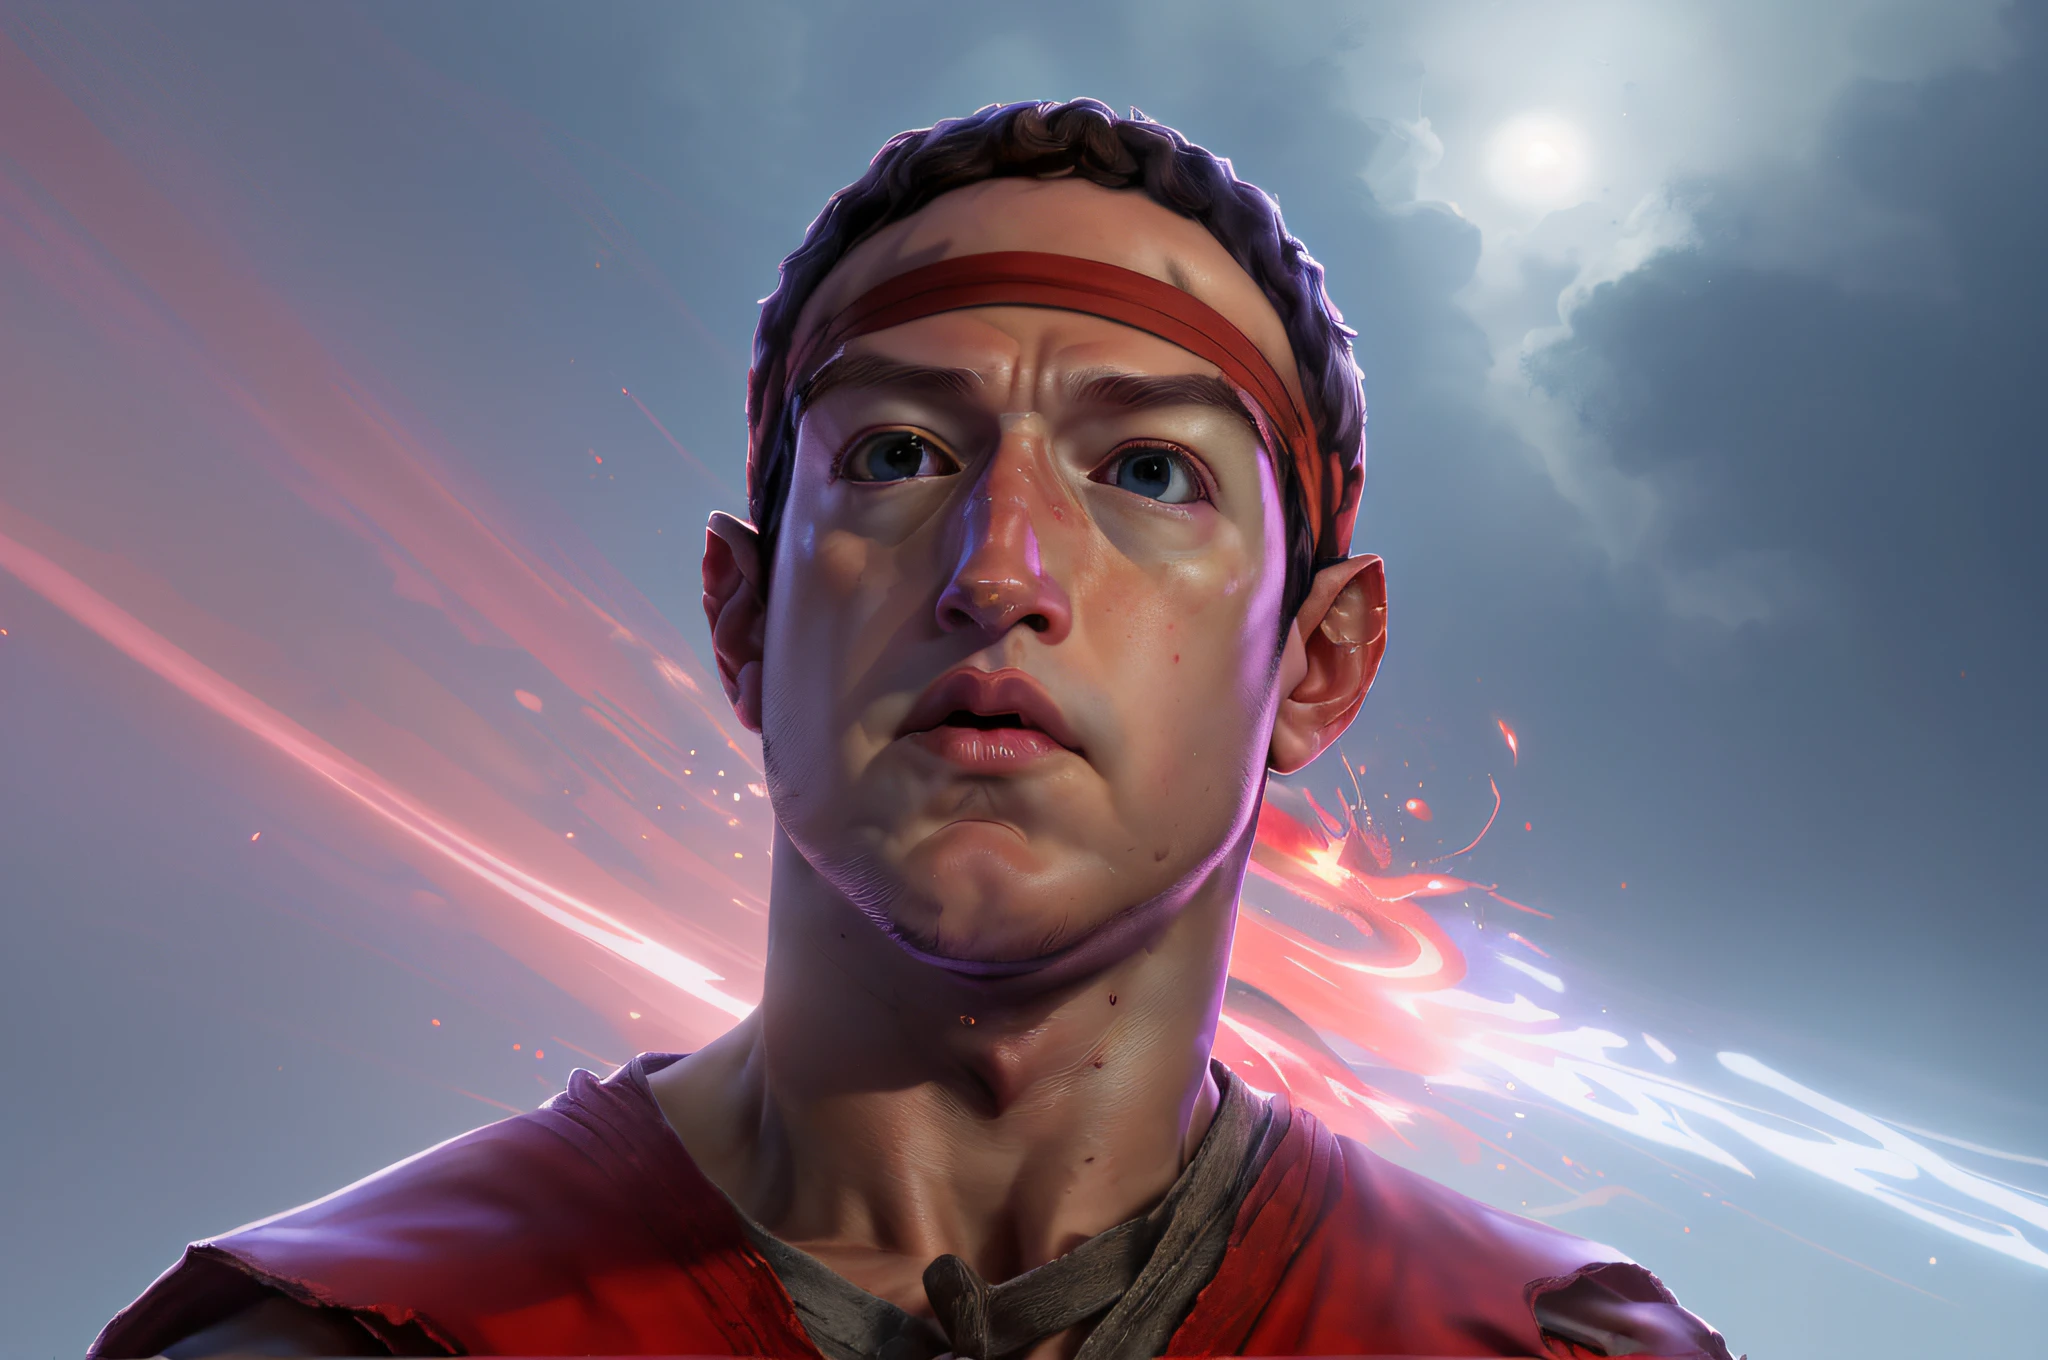 **Mark Zuckerberg se enfrenta al arte de Ryu de Street Fighter con ira, Una cara muy detallada, diadema roja, Un entorno extremadamente detallado., un fondo detallado, colores extremos, Graduación de color profesional, iluminación de borde, fuego, y caos, Ryu**